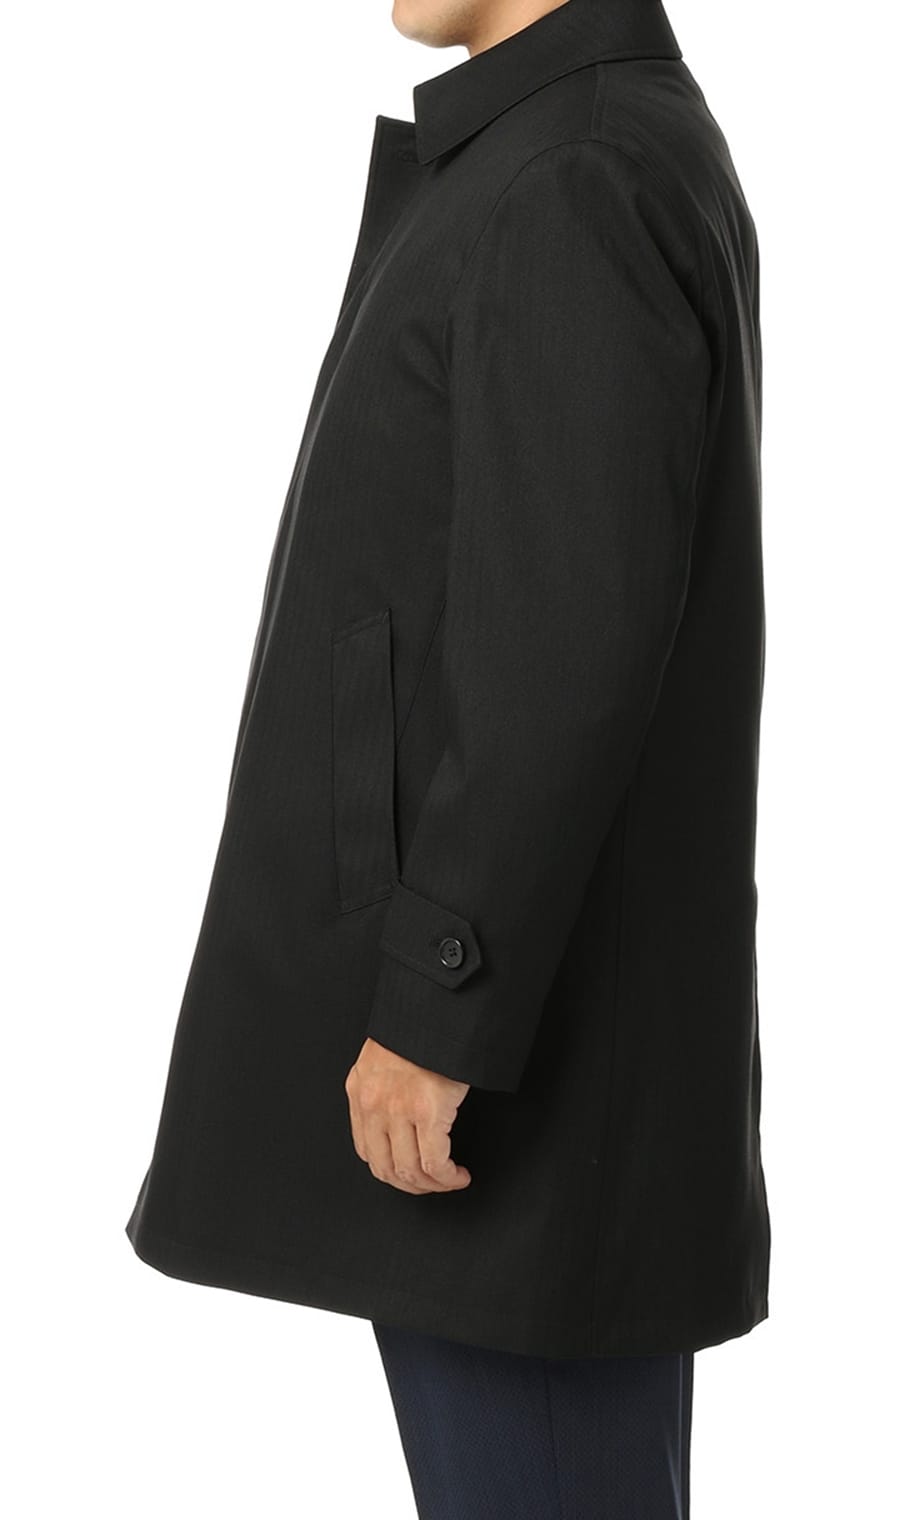 ステンカラースタンダードコート 合繊 7255r194 97 Regal 紳士服 スーツ販売数世界no 1 洋服の青山 公式通販